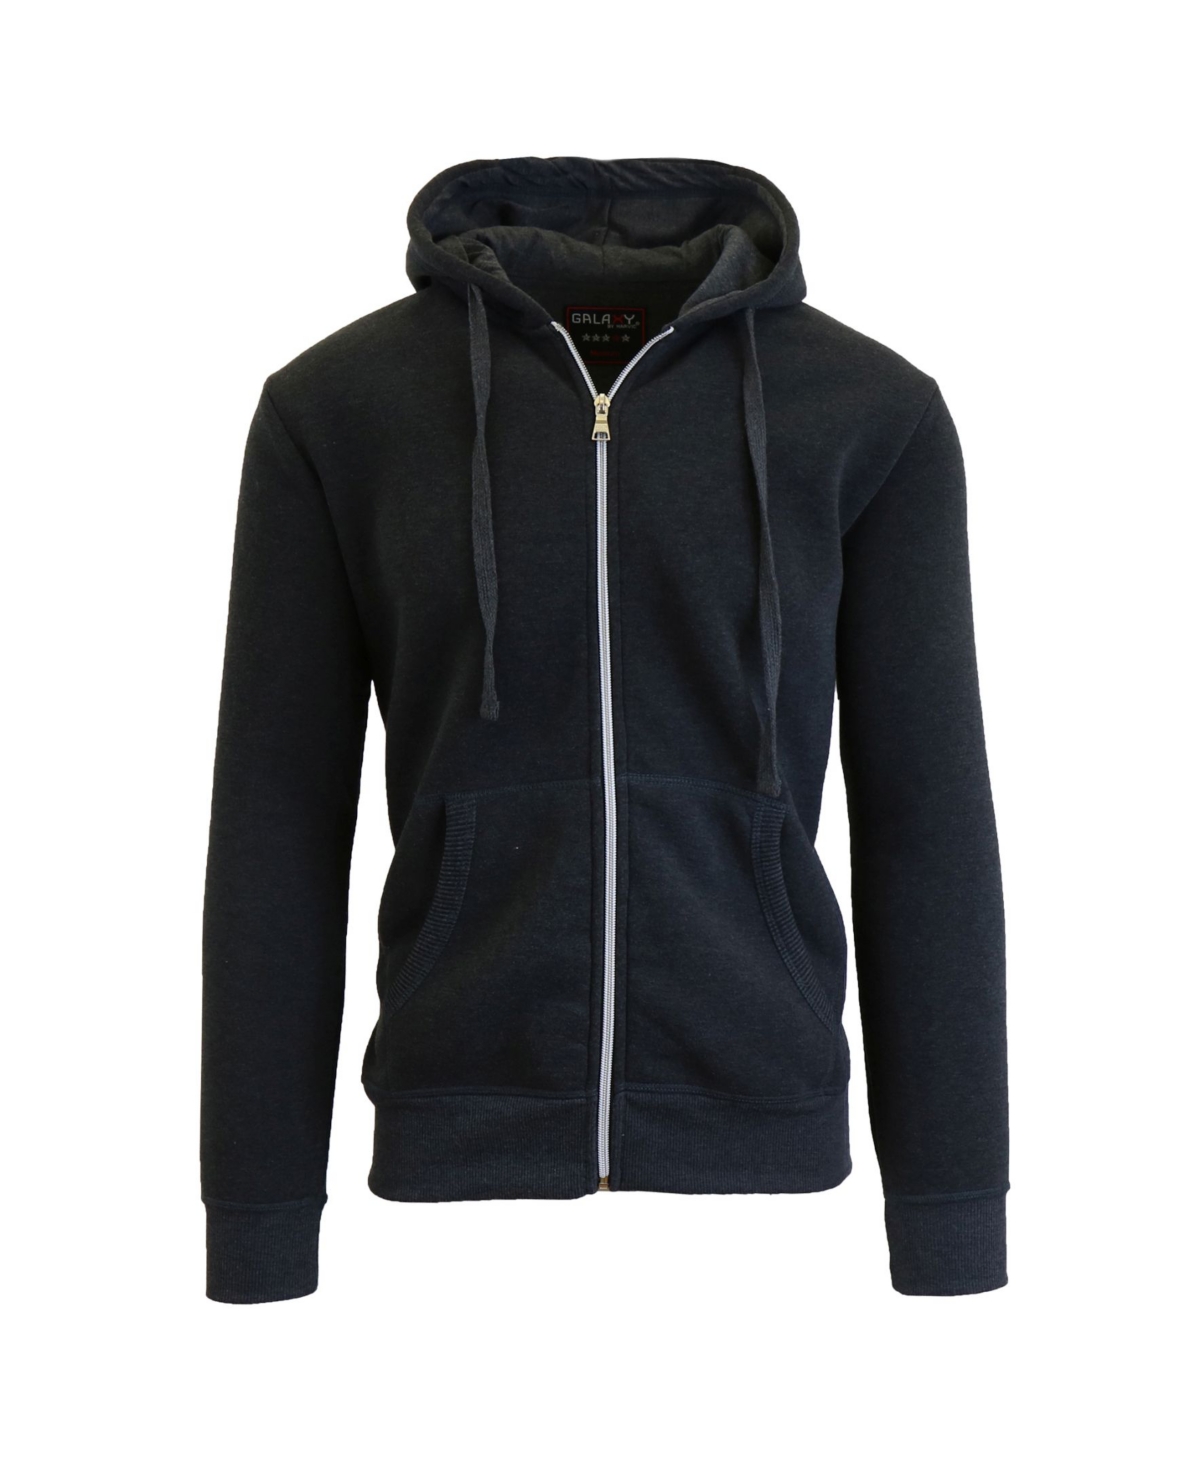 Men's Full Zip Fleece Hooded Sweatshirt - Black